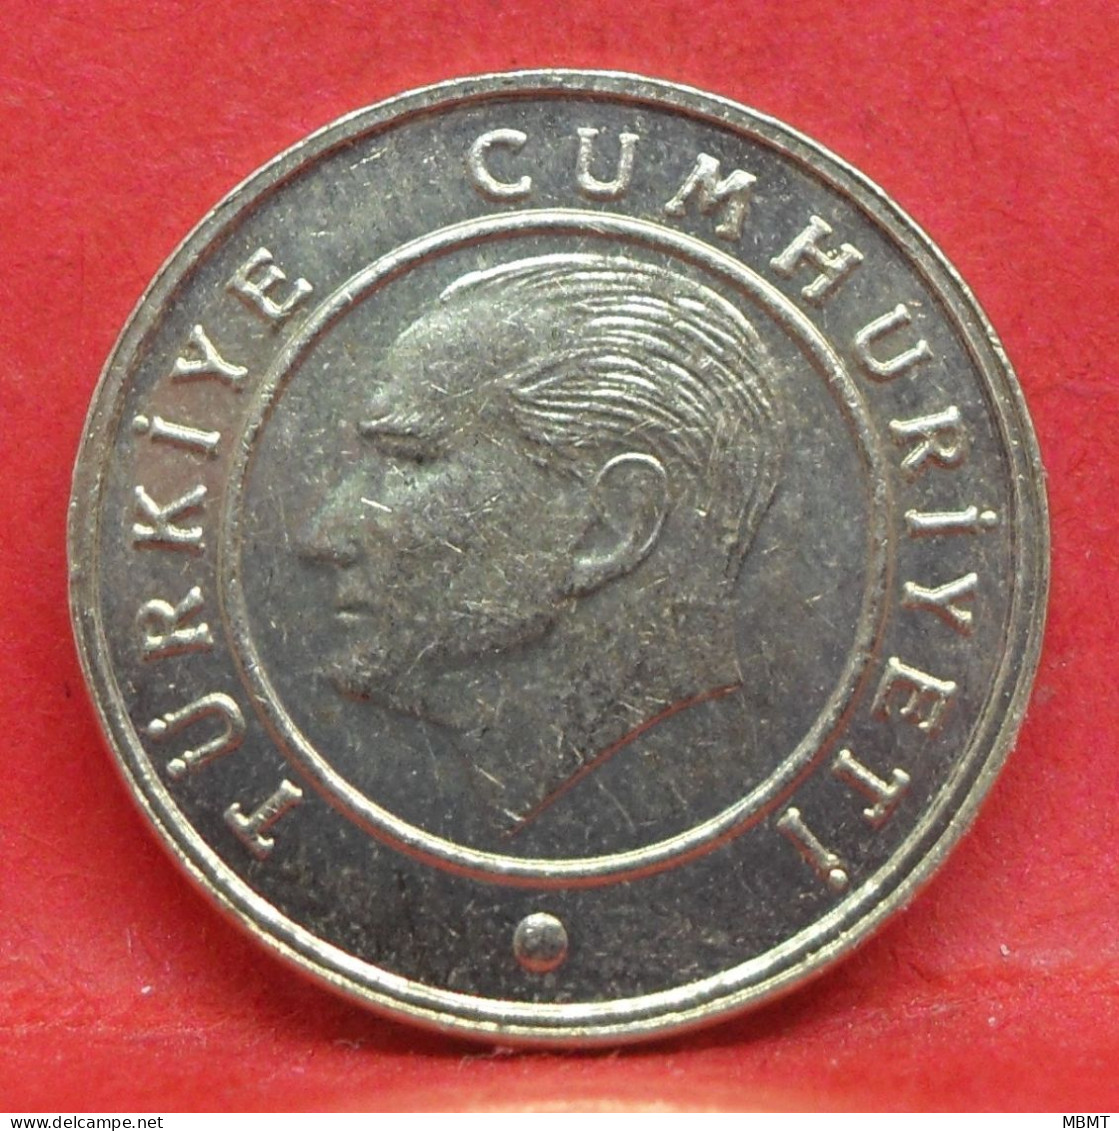 5 Kurus 2009 - SUP - Pièce De Monnaie Turquie - Article N°4958 - Turquie